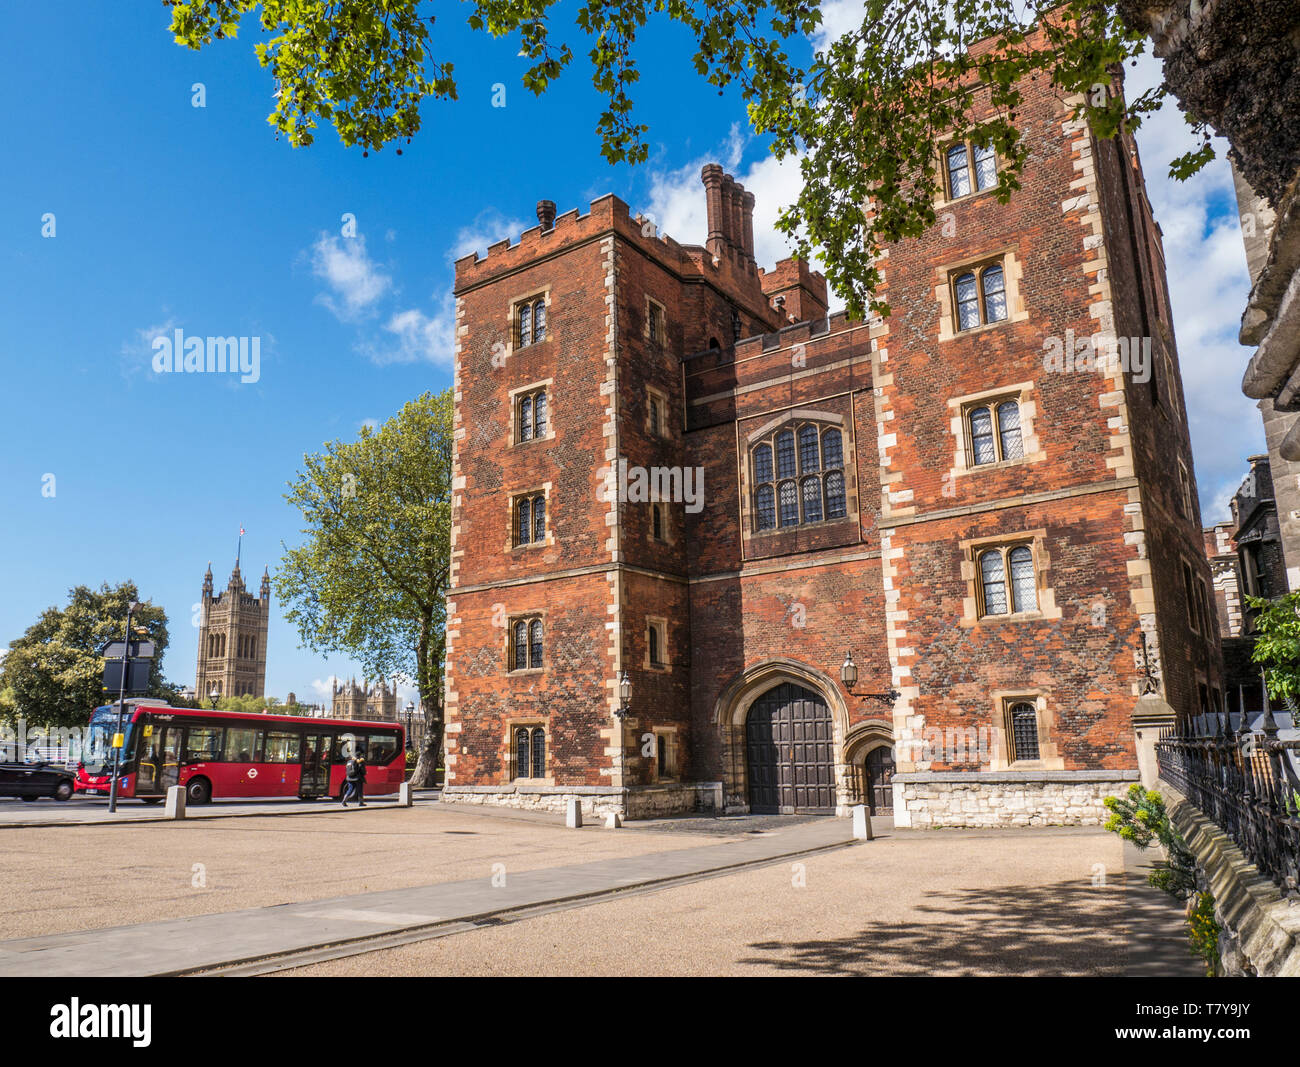 Lambeth Palace de Londres. Morton's Tower avec le Parlement et du London Bus. Tudor en brique rouge gatehouse formant l'entrée de Lambeth Palace London UK Banque D'Images